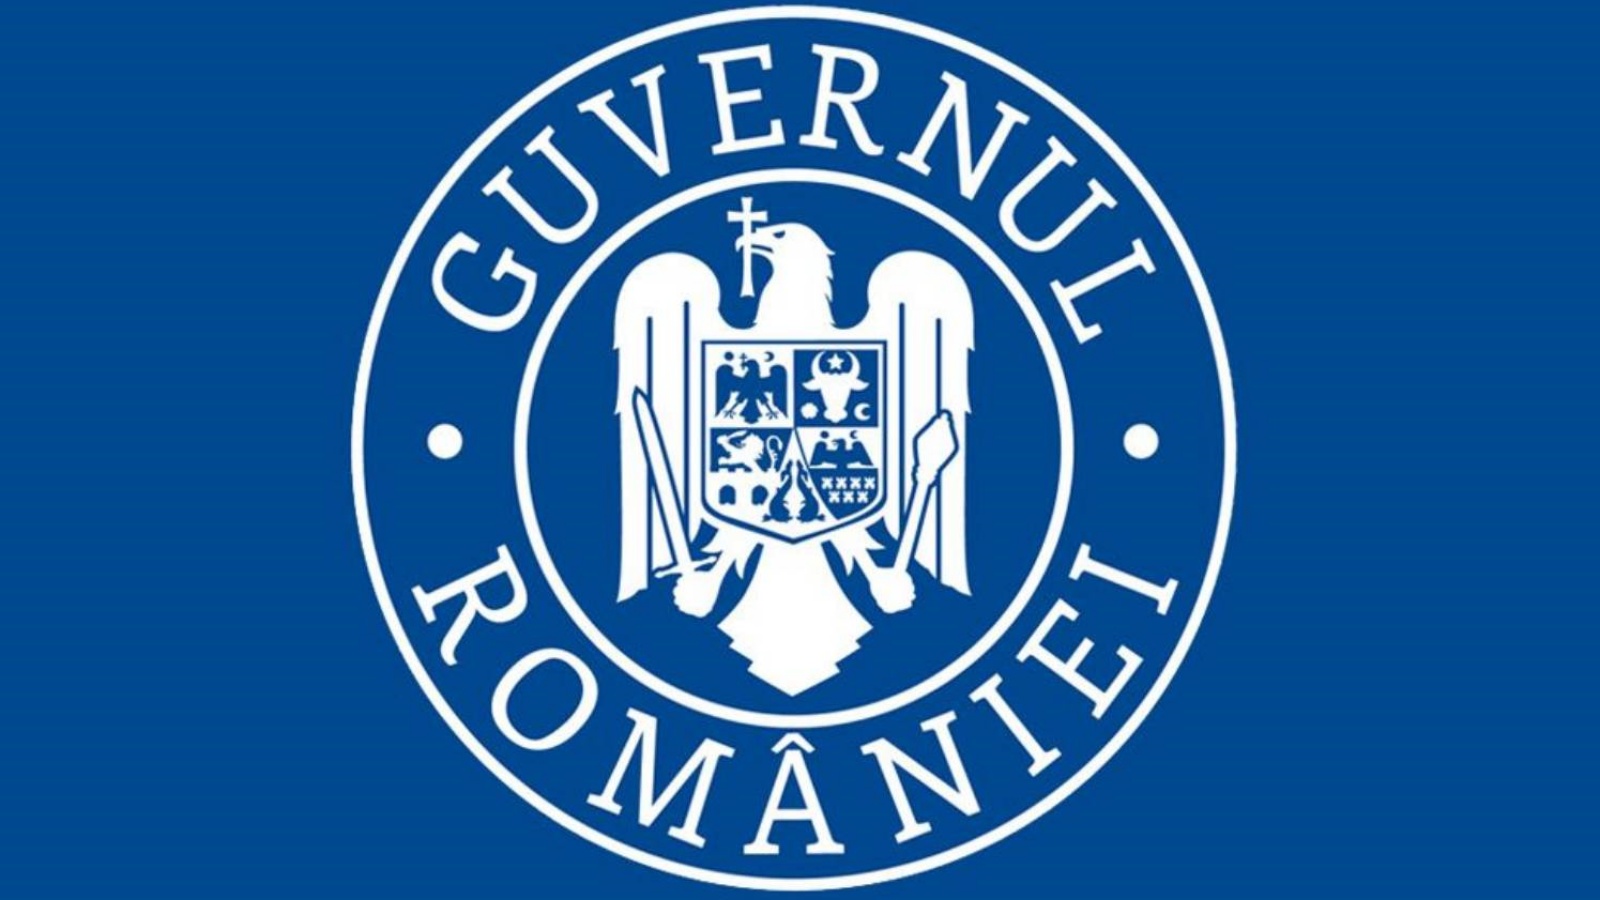 Romania Continua Cresterea Economica Conform Guvernului